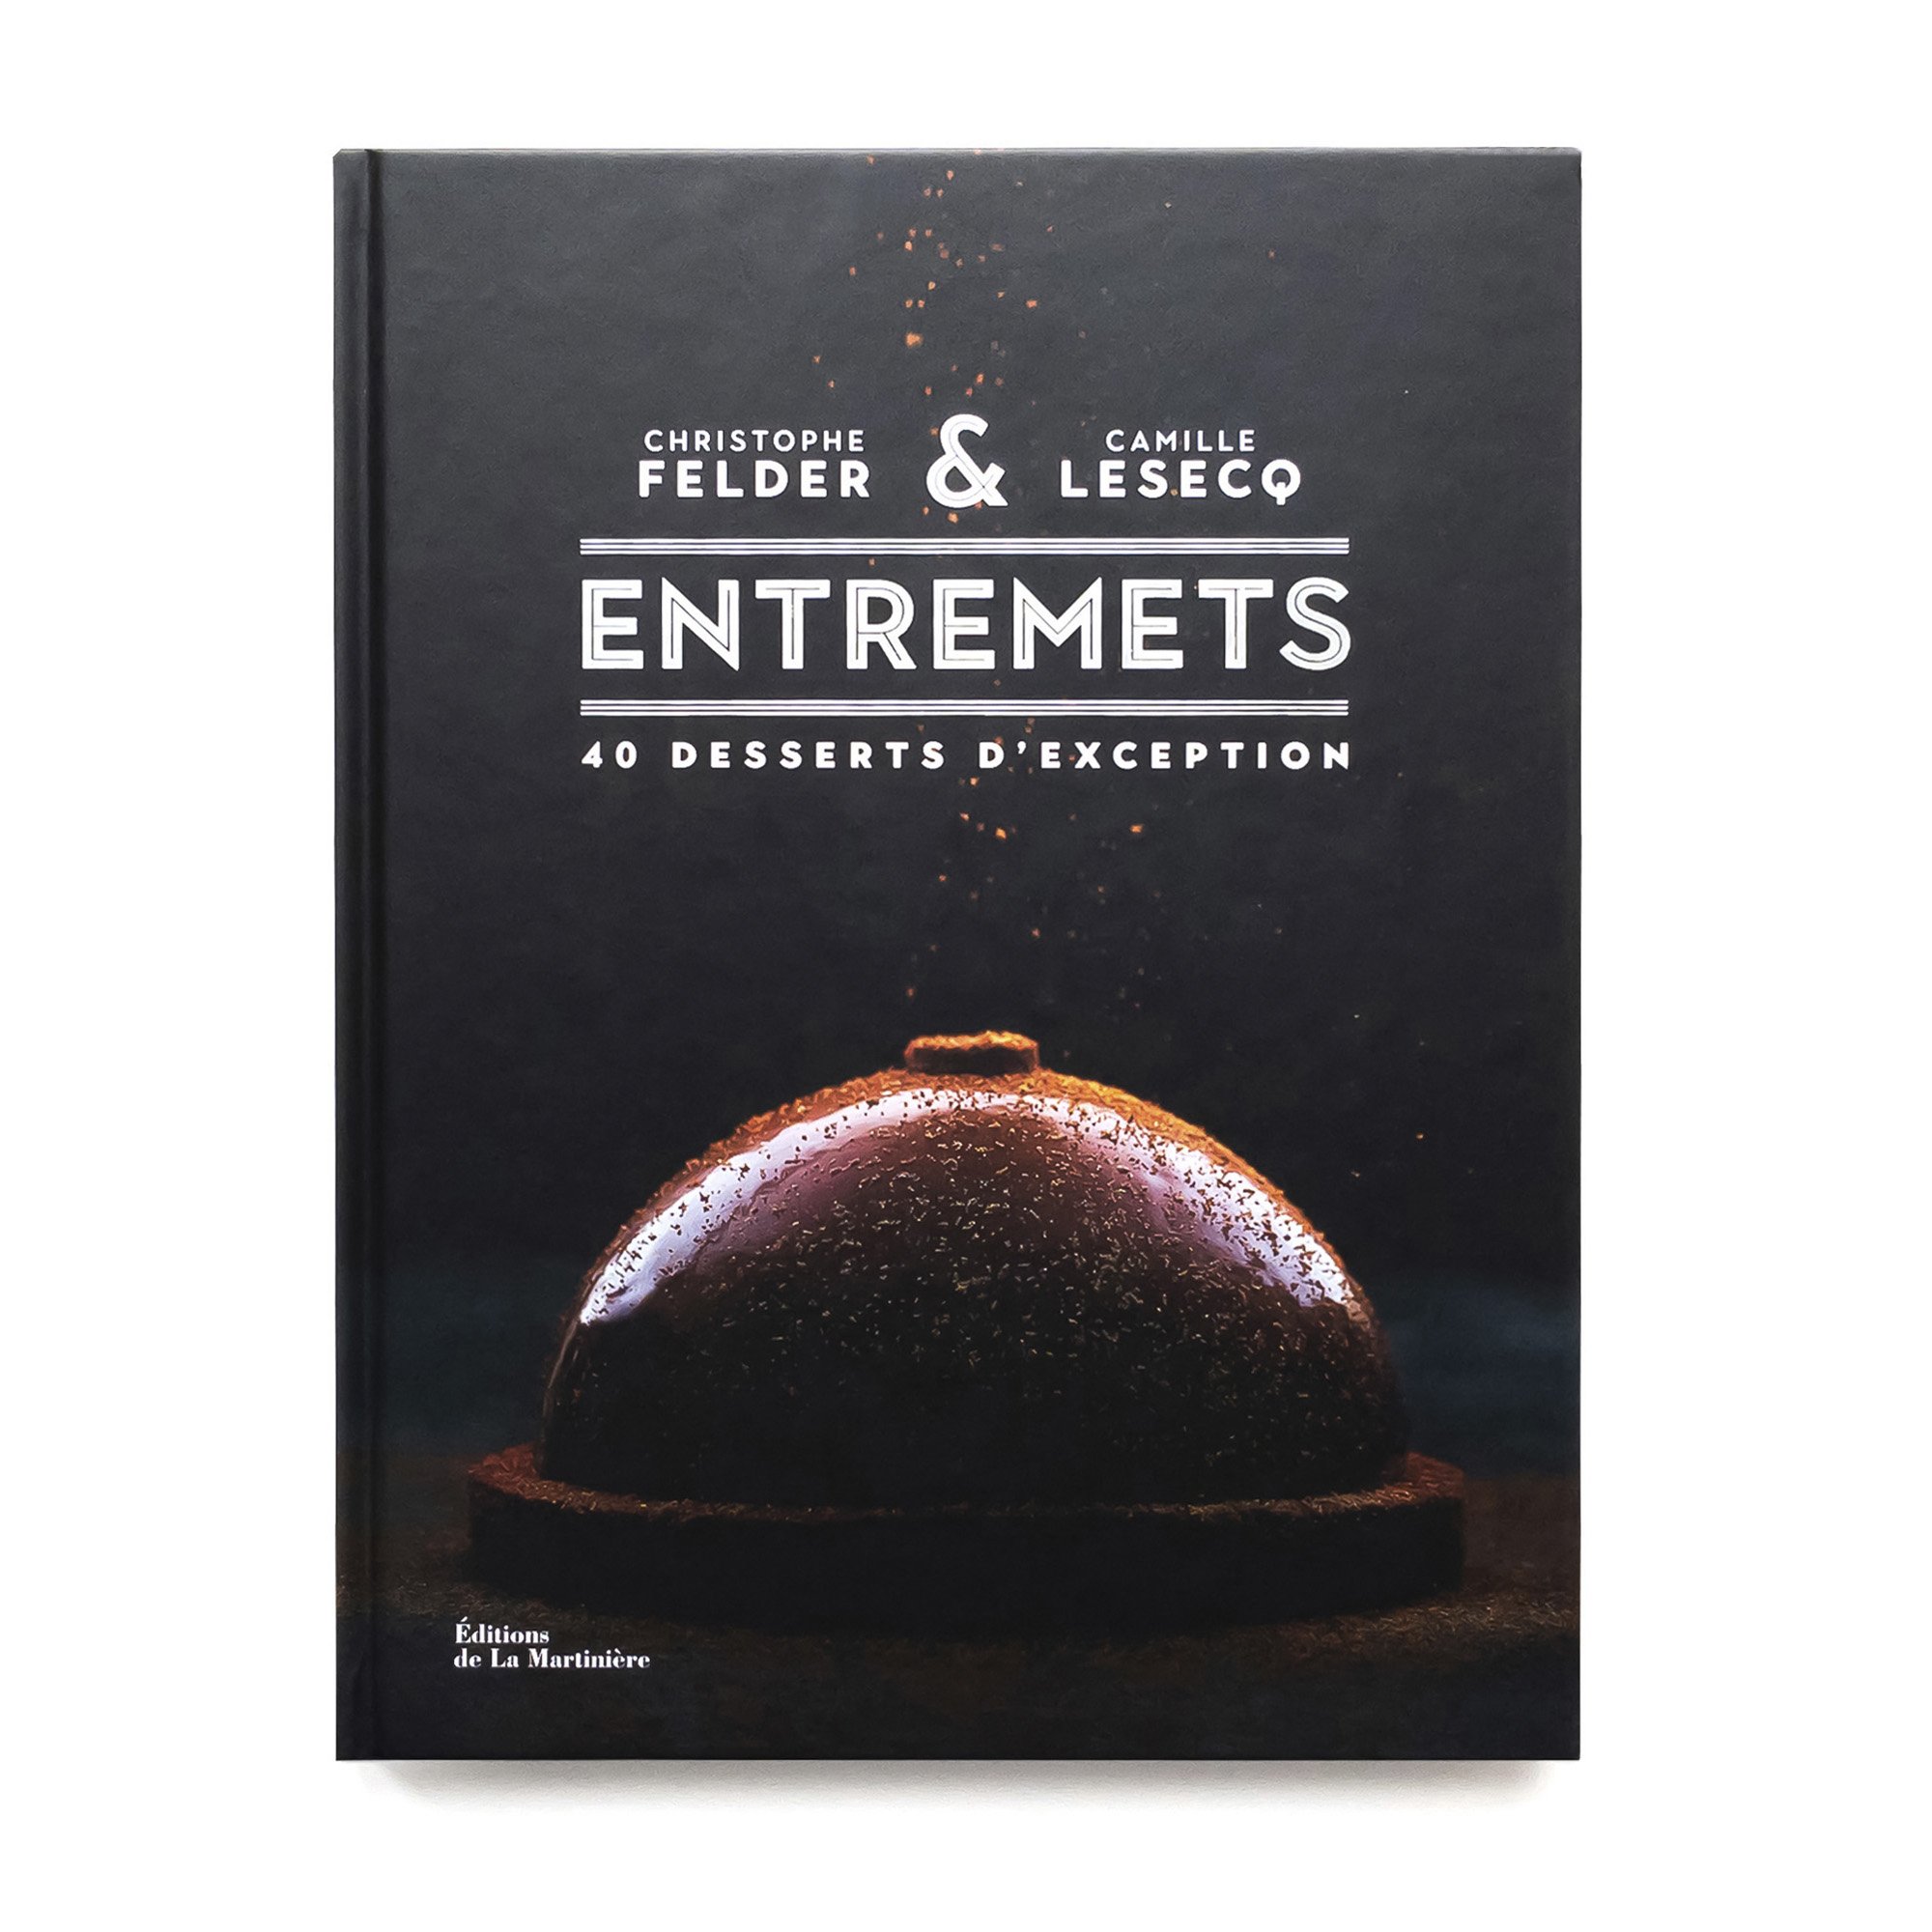   Entremets  40 desserts d’exception  Éditions de La Martinière 224 pages 